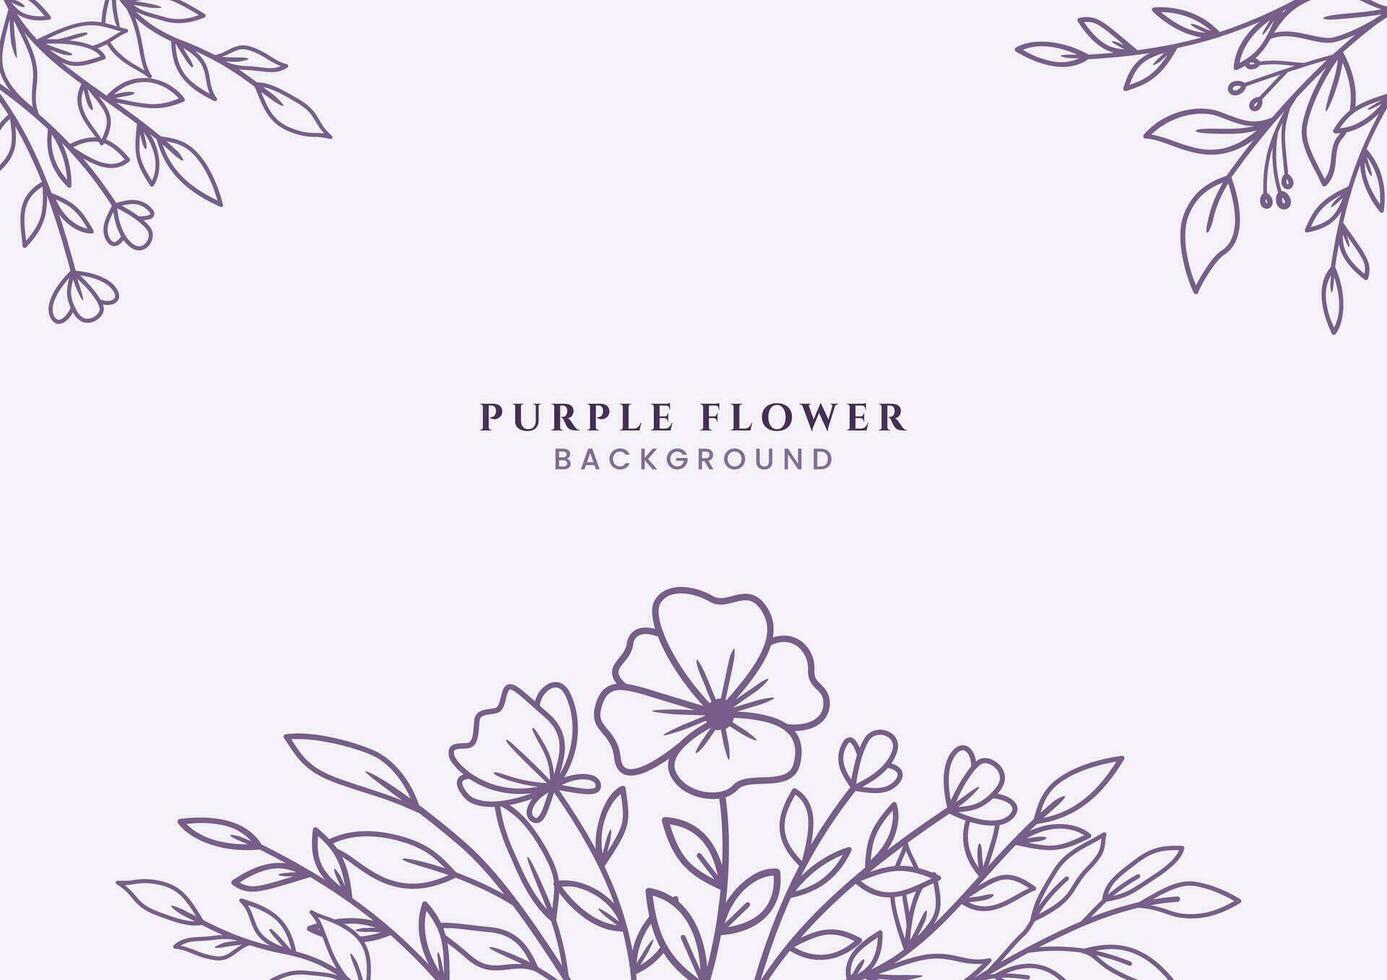 hermosa mano dibujado púrpura flores y hojas en blanco antecedentes para Boda invitación o compromiso o saludo tarjeta vector